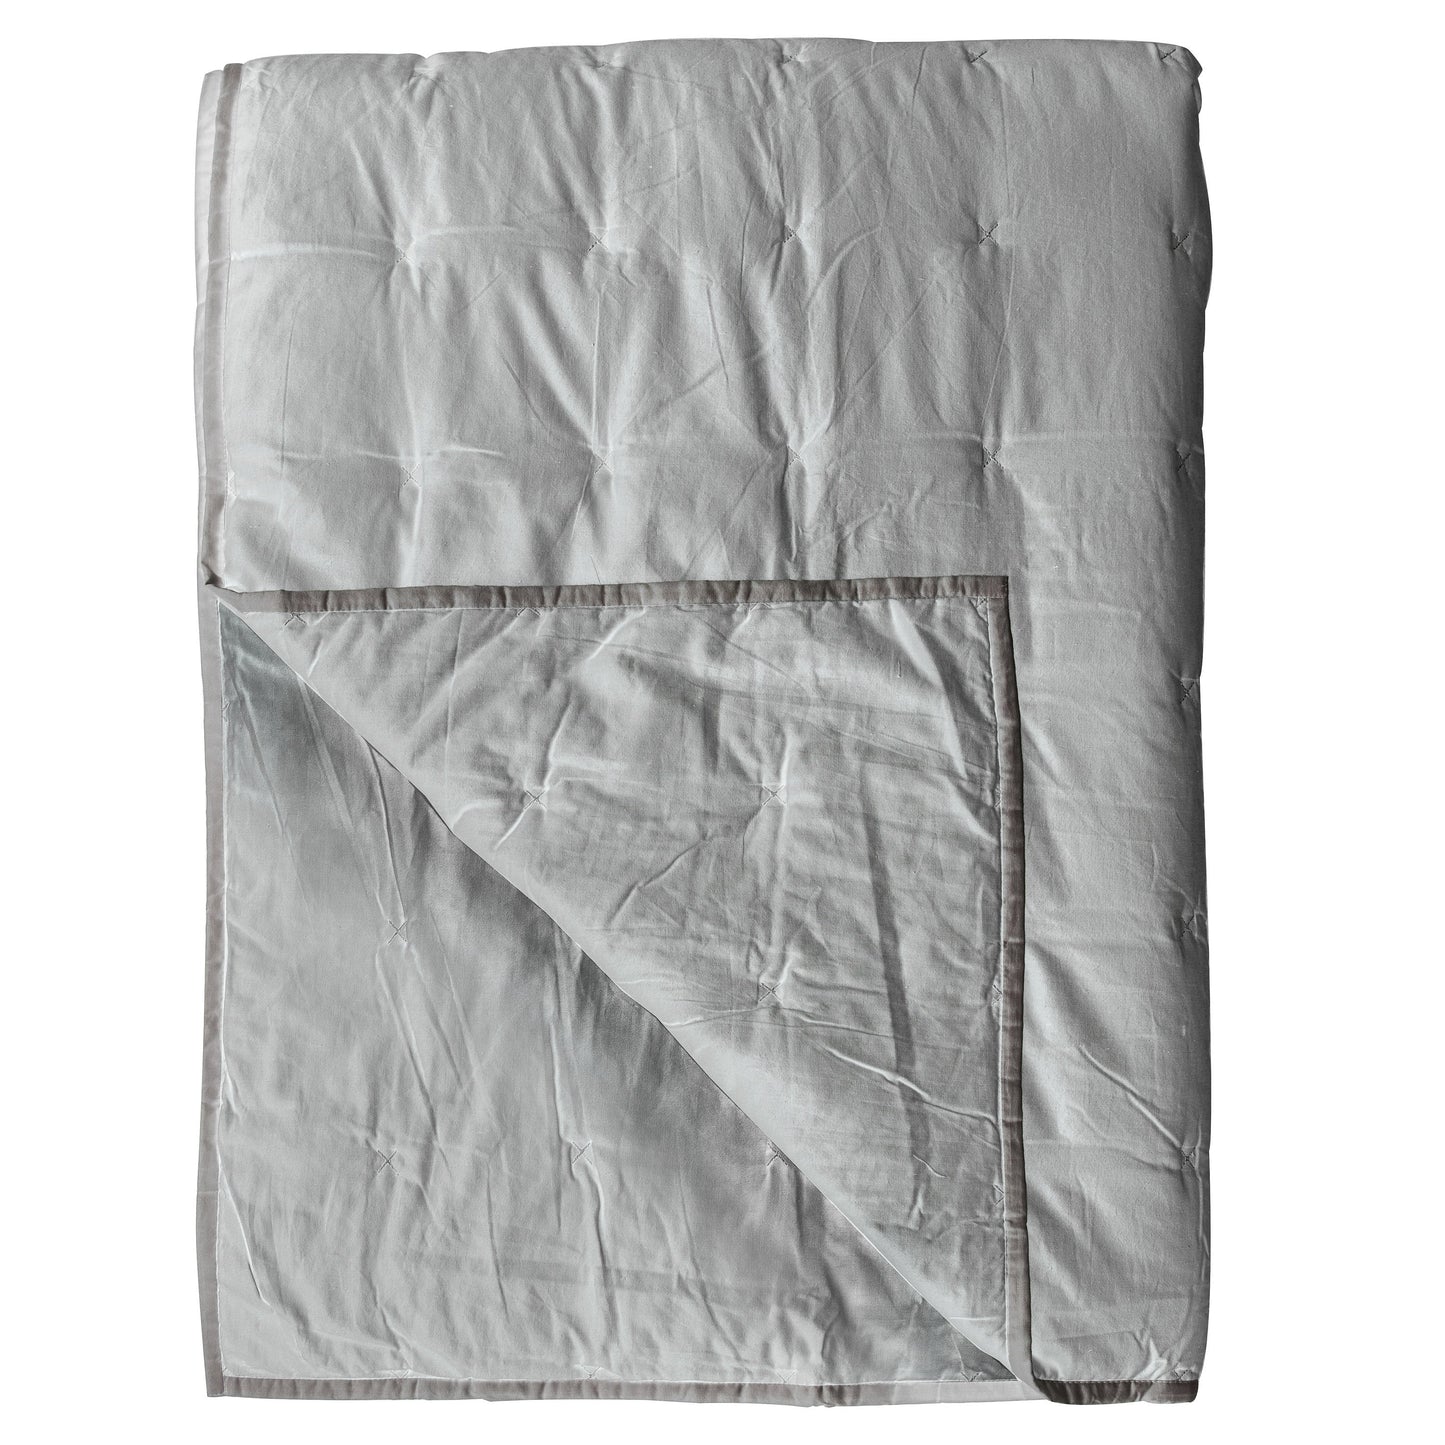 Cotton Stitch Bedspread White Silver 2400x2600mm